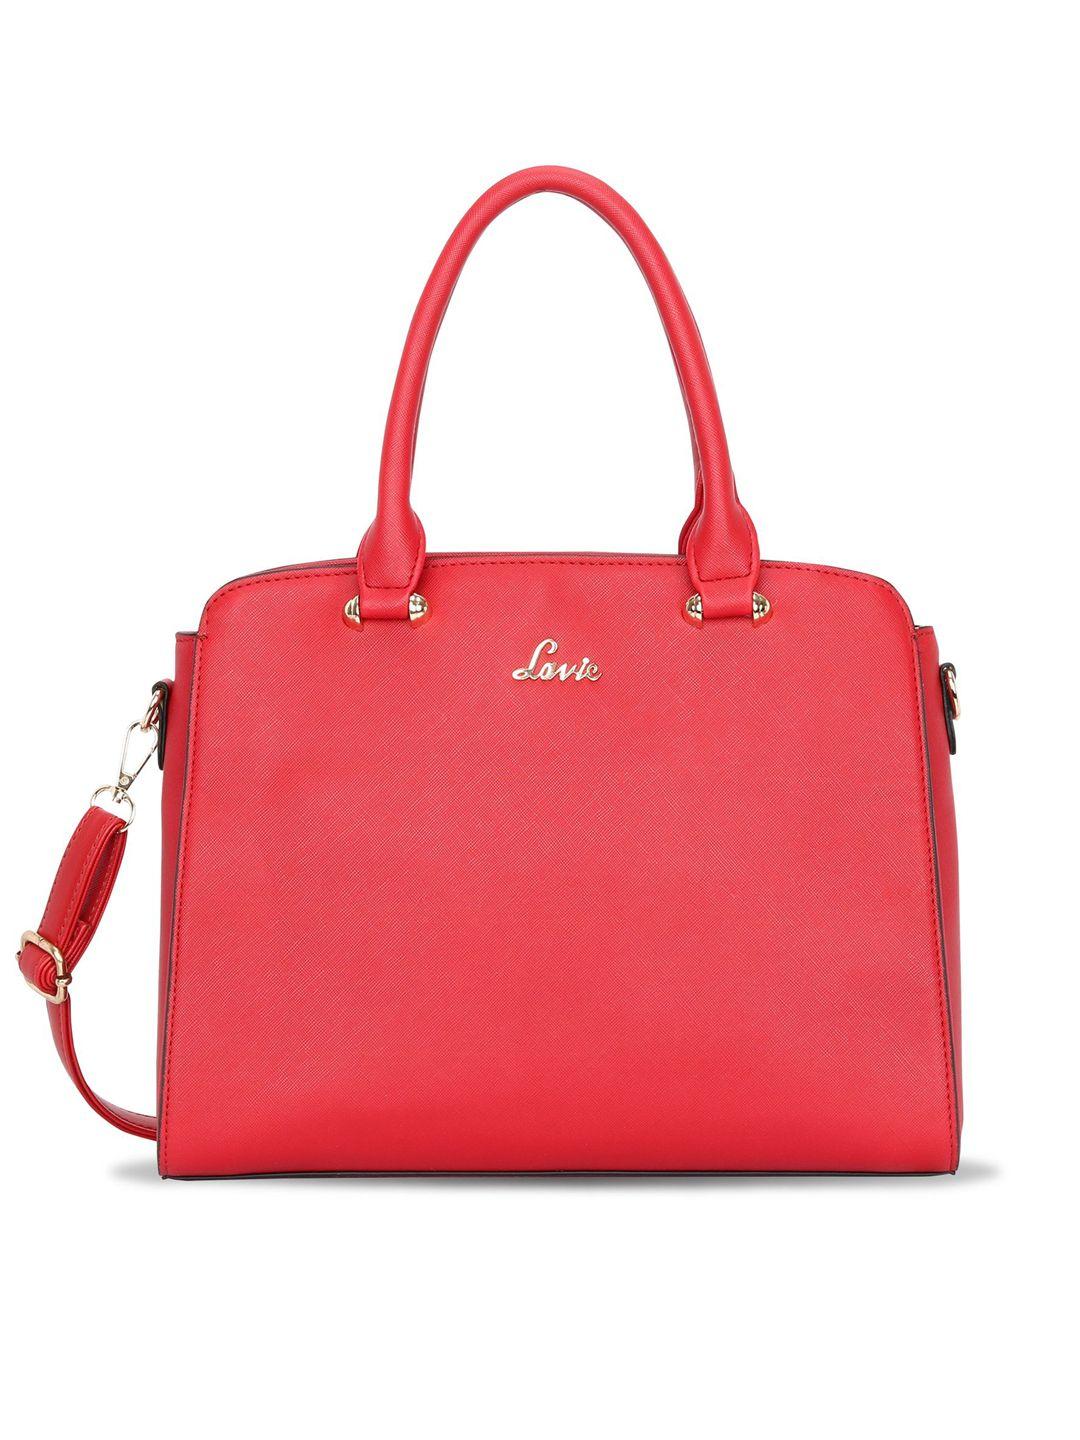 lavie-women-red-saffiano-textured-structured-handheld-bag